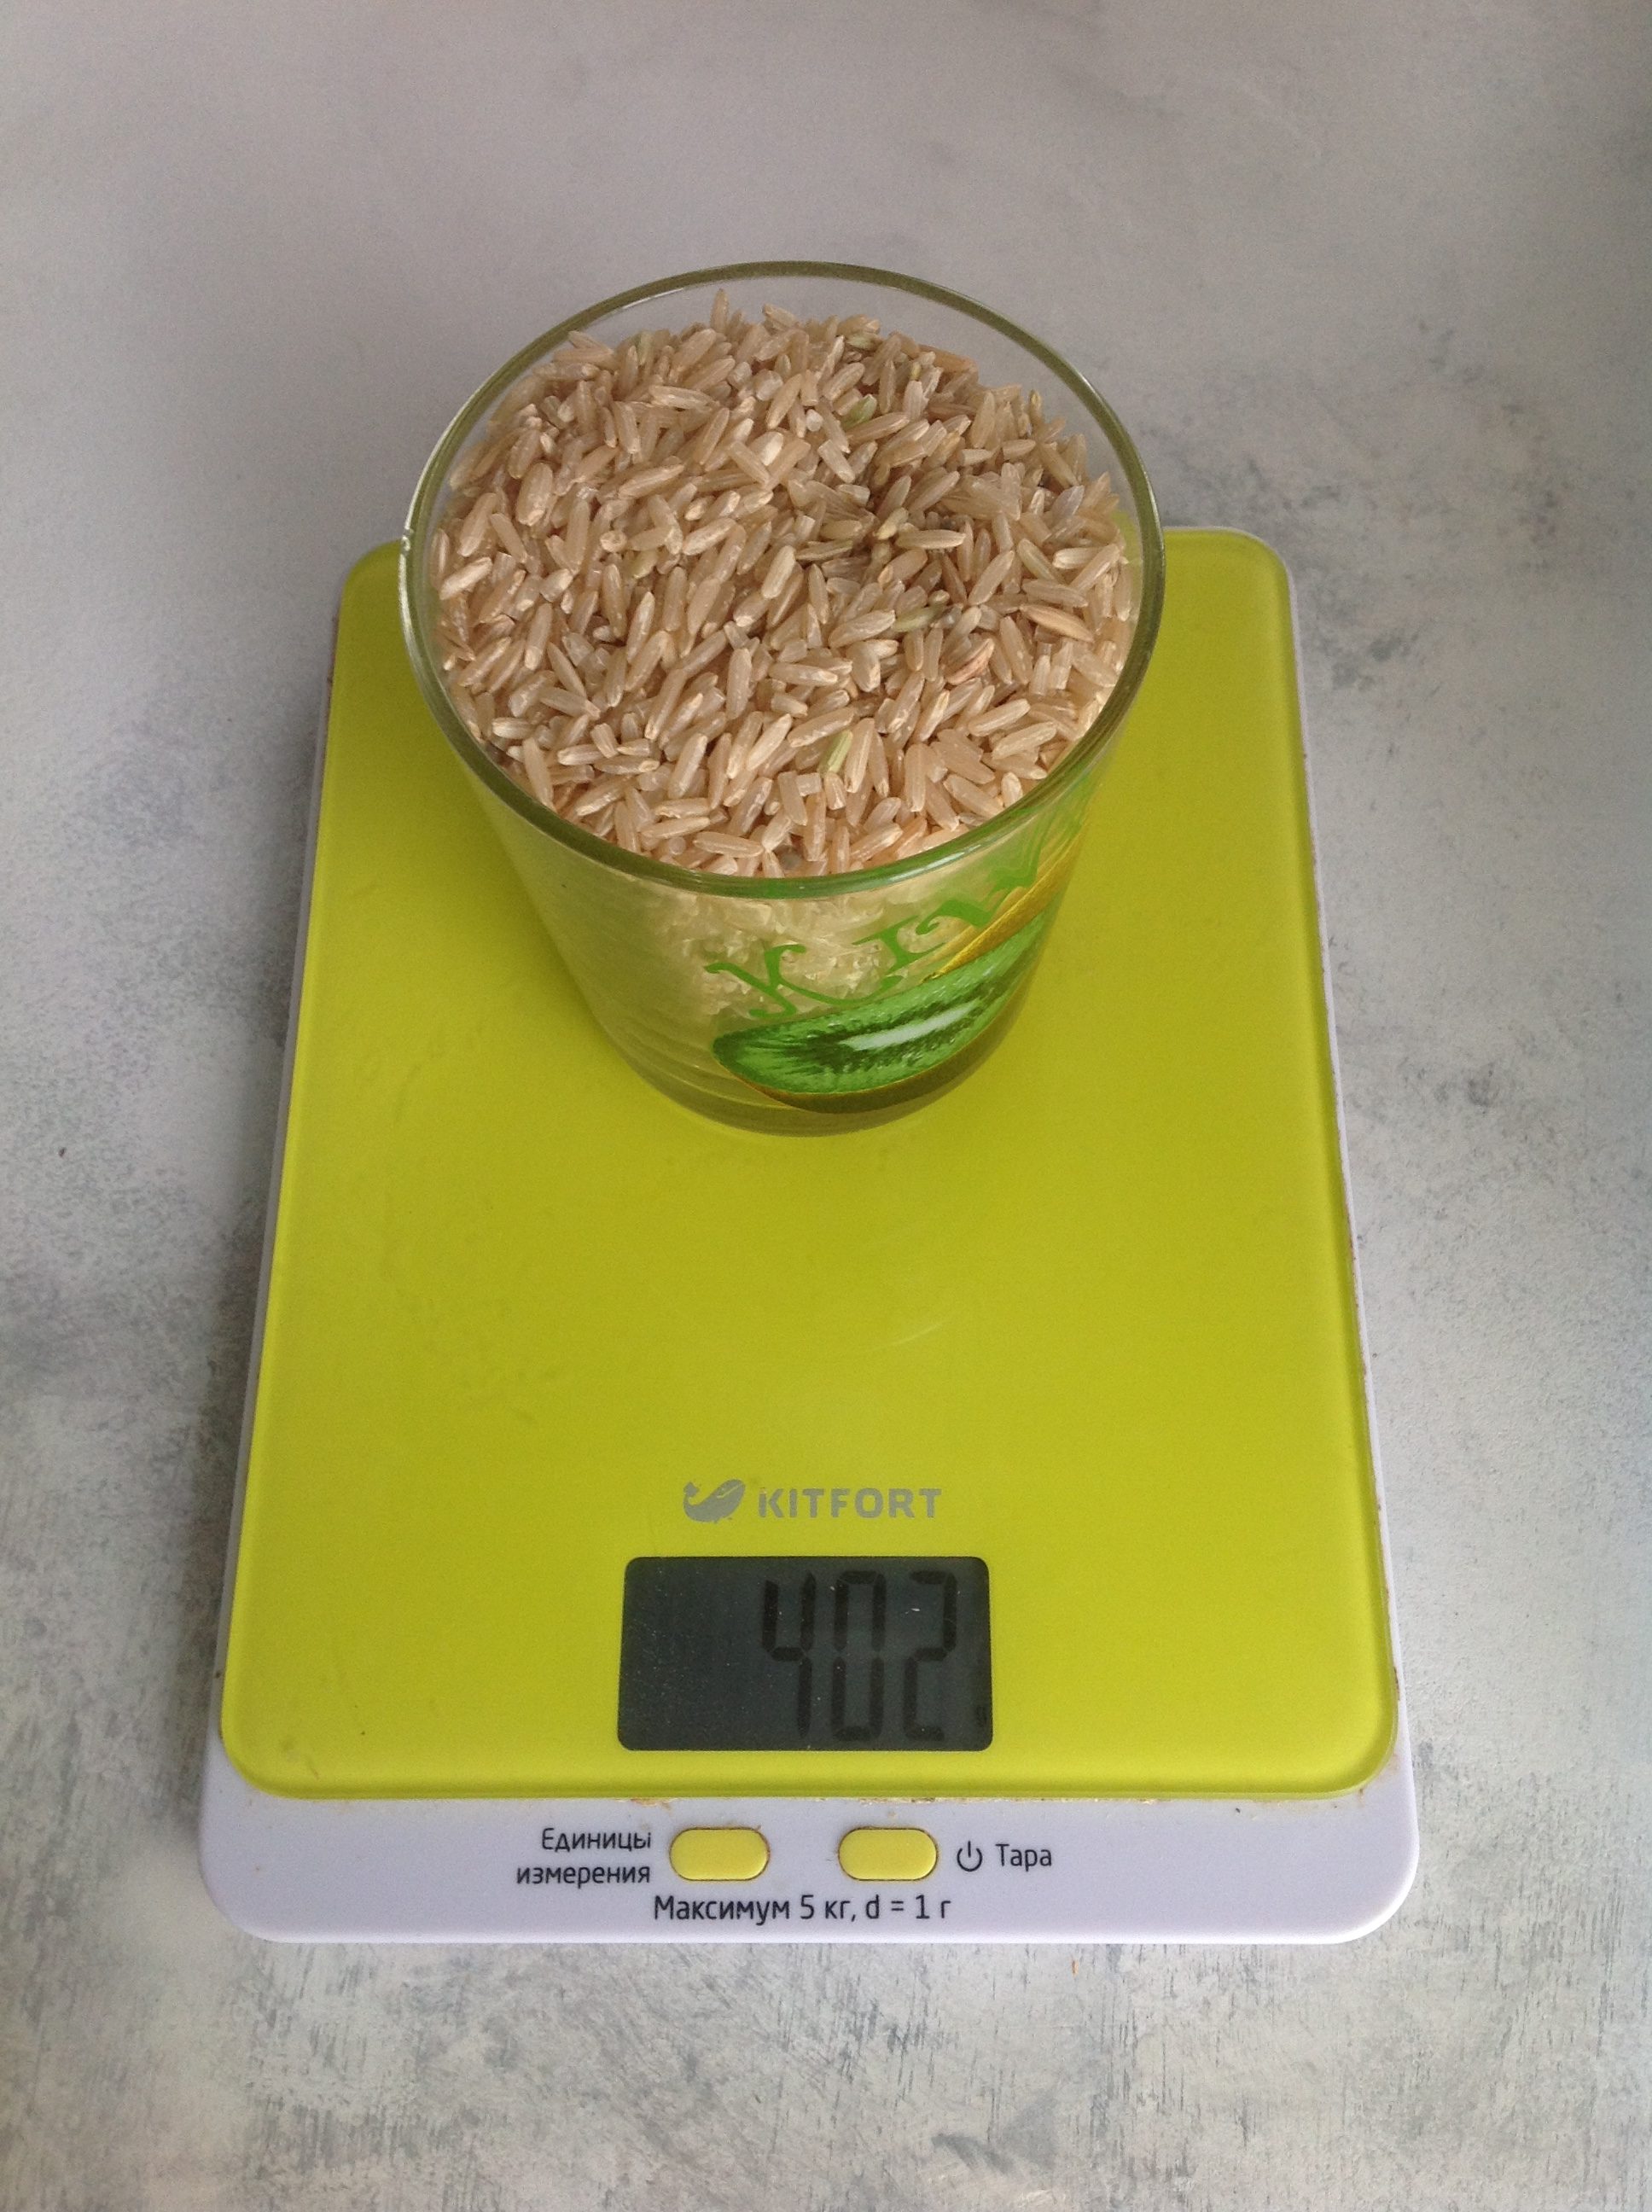 Сколько весит рис бурый сухой в стакане 250 мл?